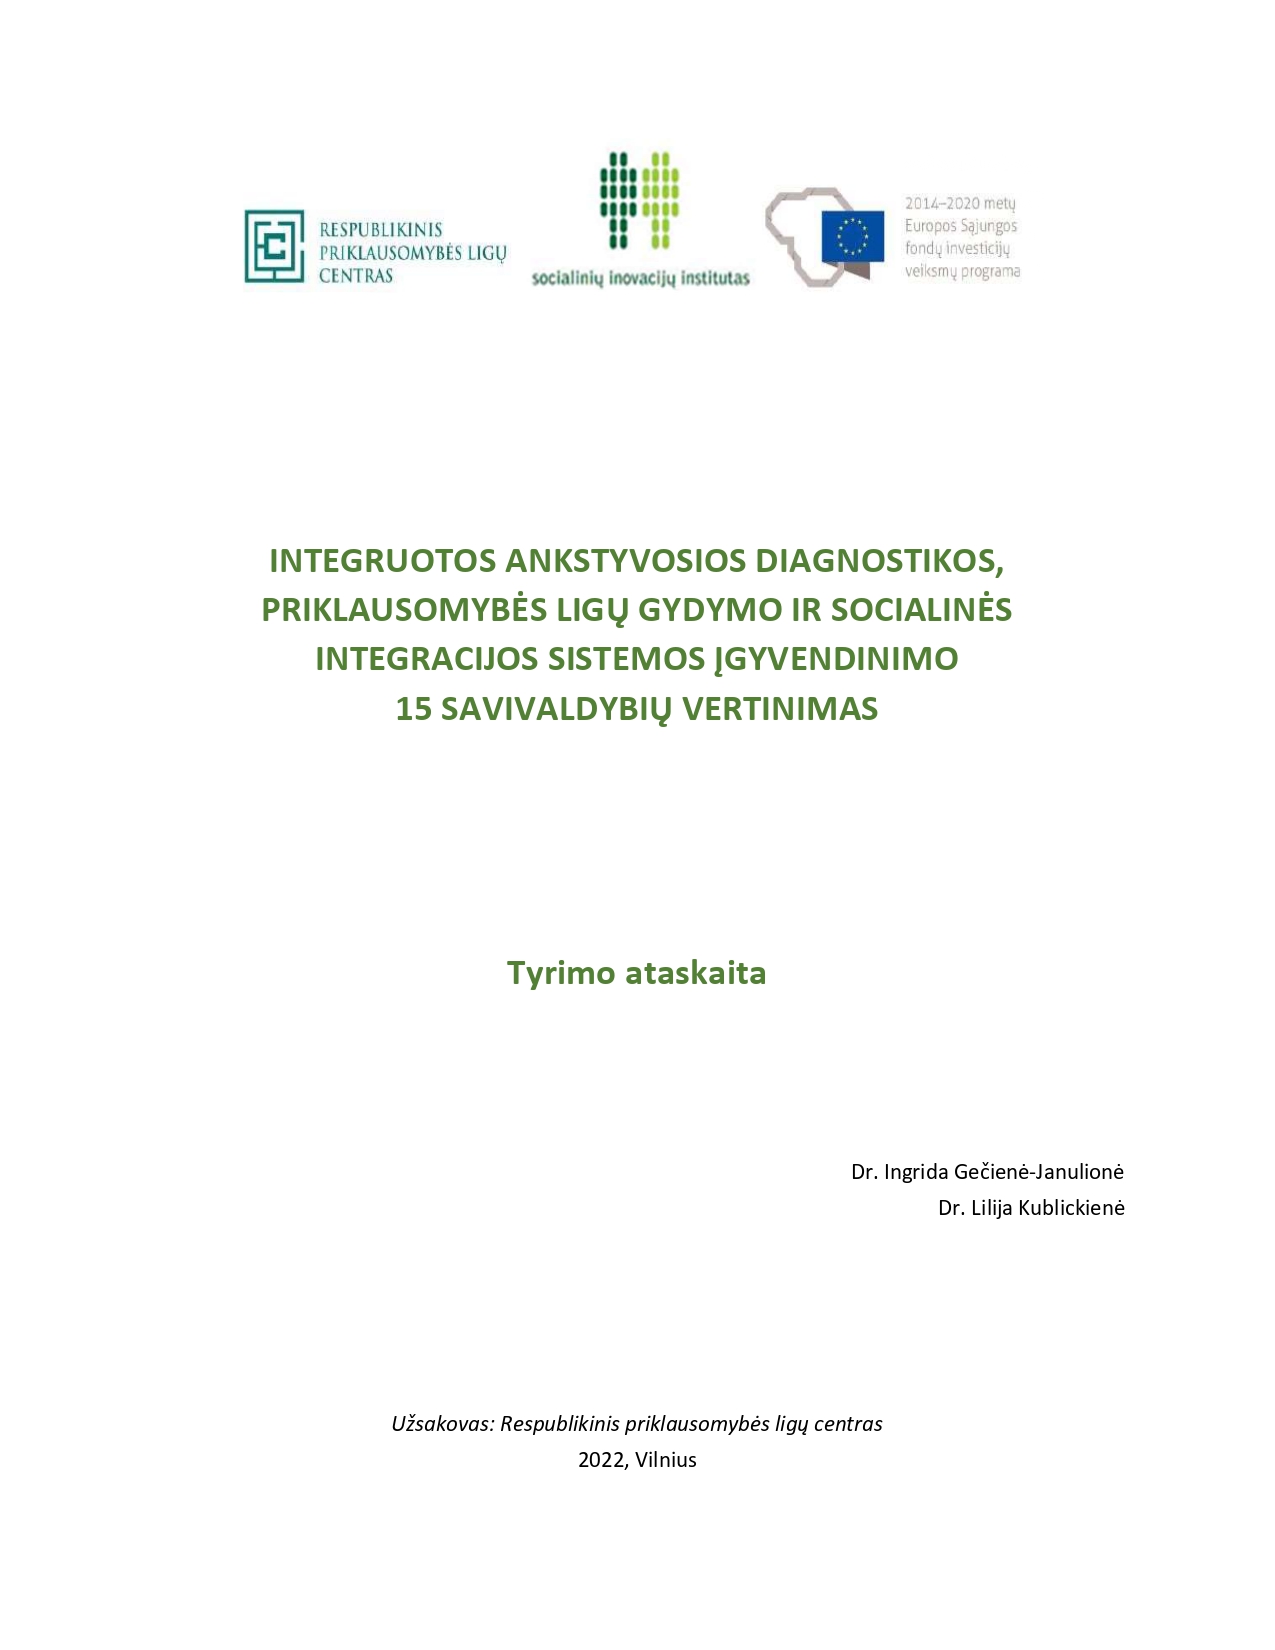 Tyrimo ataskaita „Integruotos ankstyvosios diagnostikos, priklausomybės ligų gydymo ir socialinės integracijos sistemos įgyvendinimo 15 savivaldybių vertinimas“